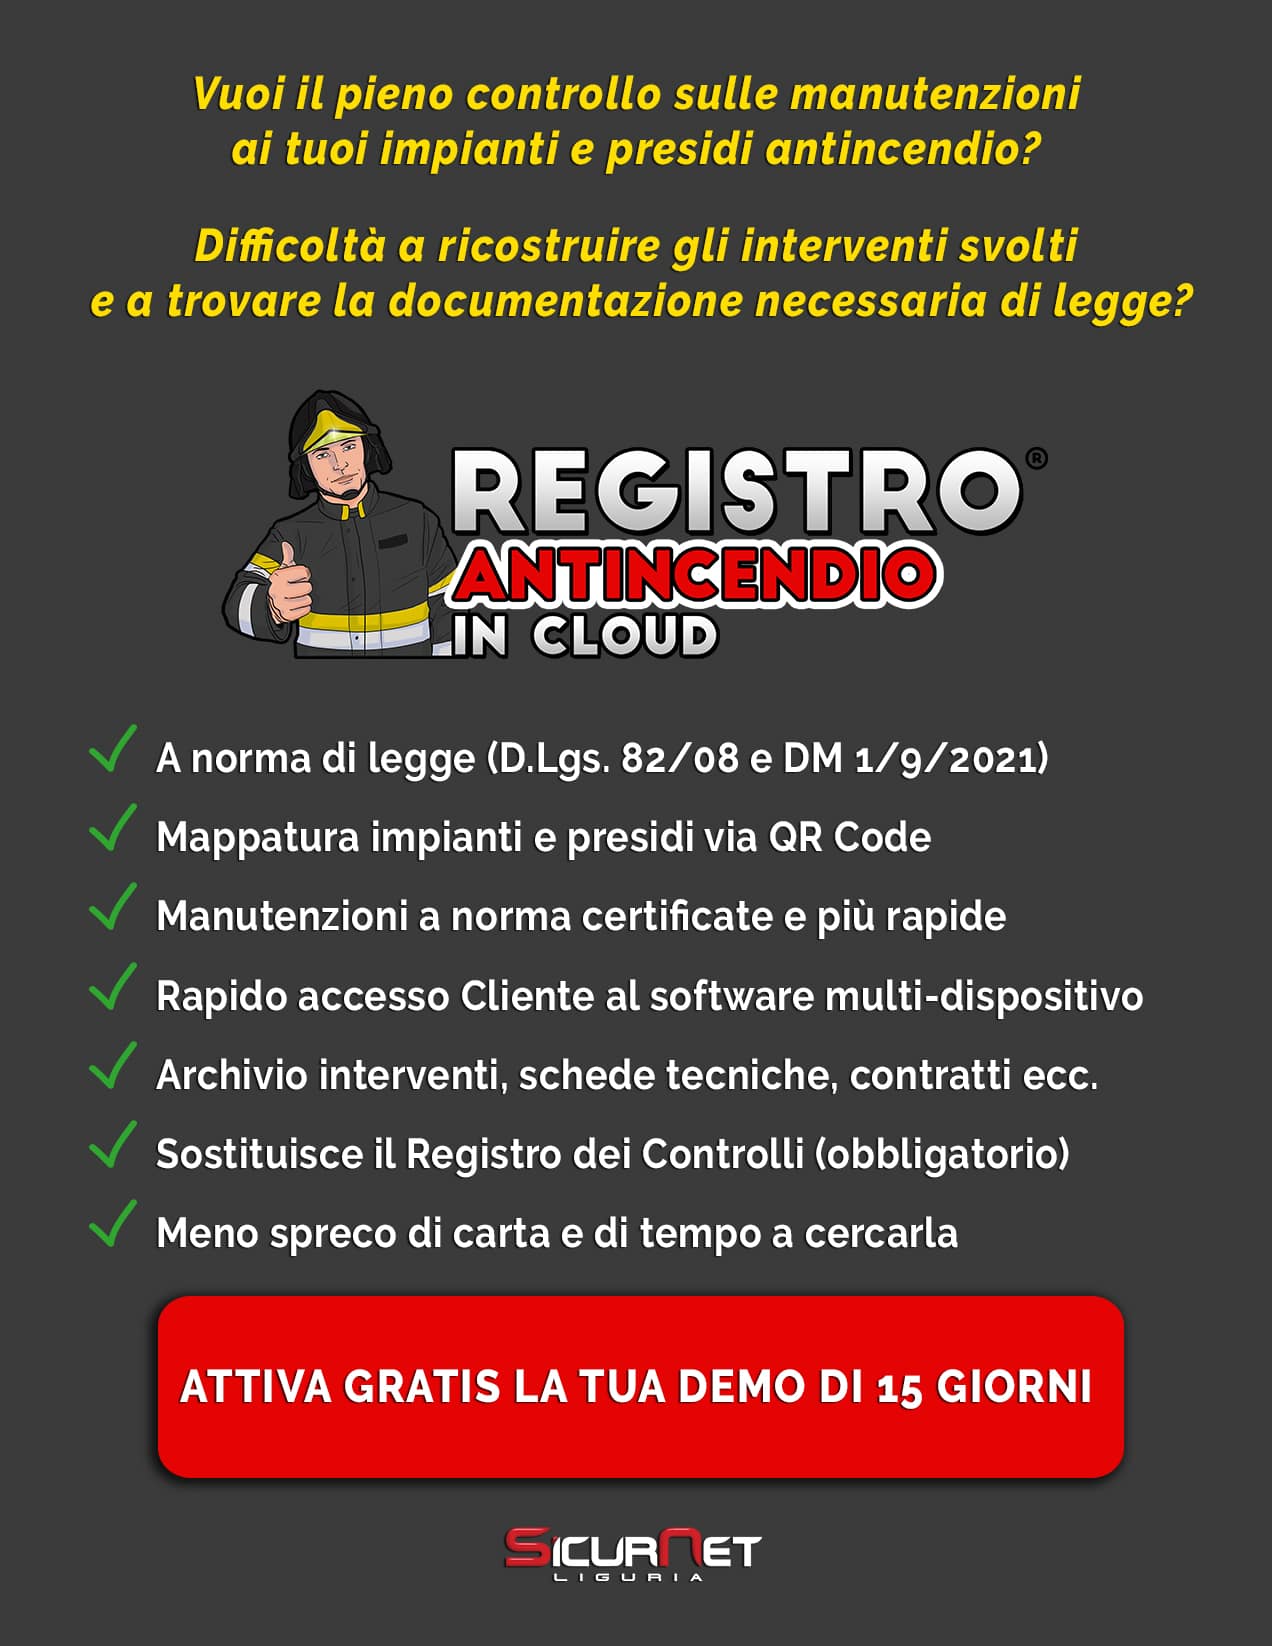 Registro Antincendio in Acloud - SicurNet Liguria